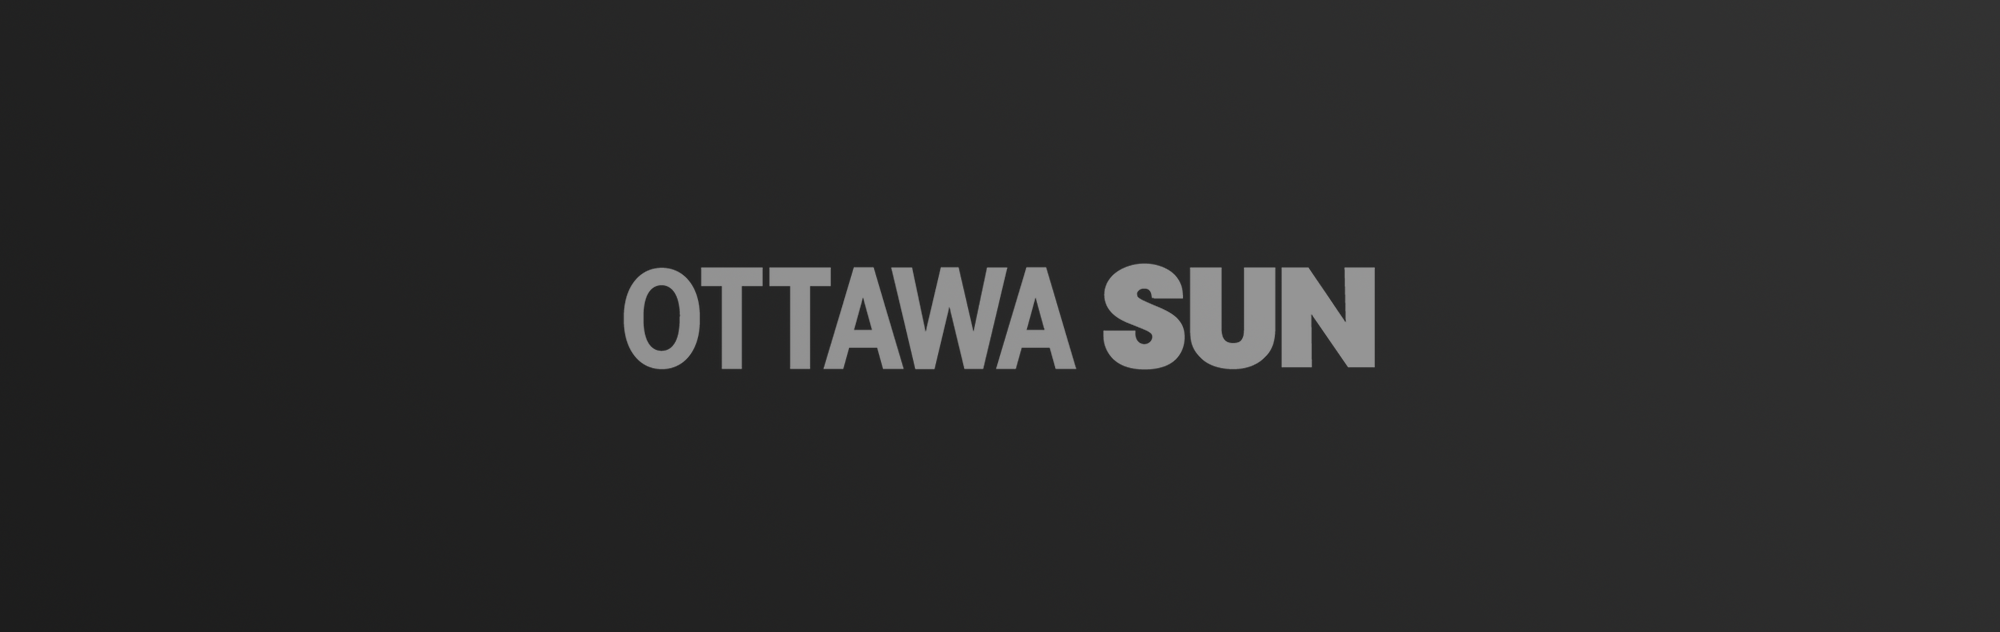 Ottawa Sun logo on dark gradient background